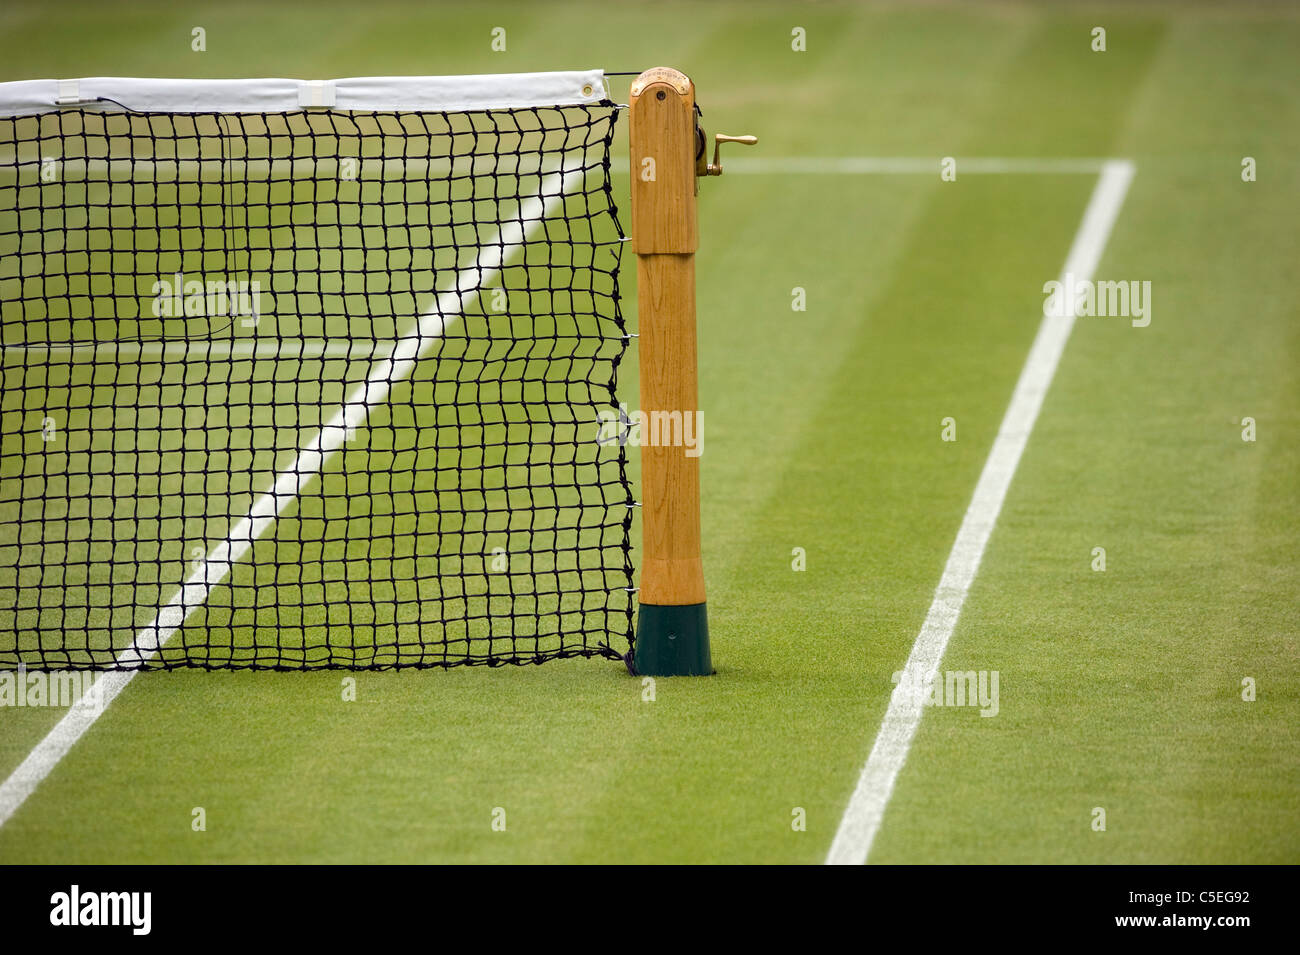 Publiez et net sur le Court central lors de l'édition 2011 des Championnats de tennis de Wimbledon Banque D'Images